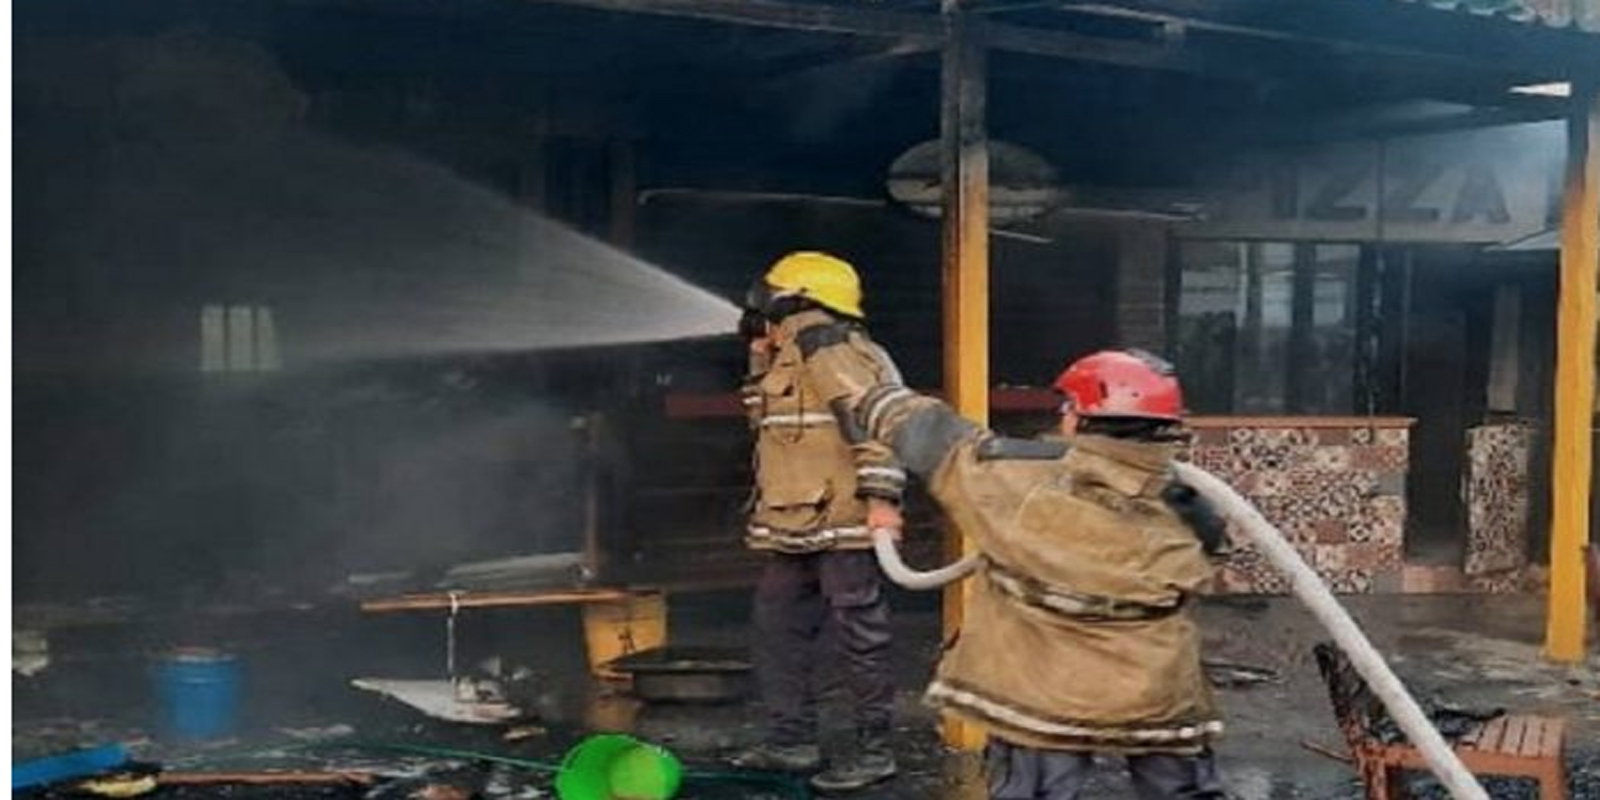  Maiquetía| Incendio en vivienda dejó dos muertos y cuatro heridos